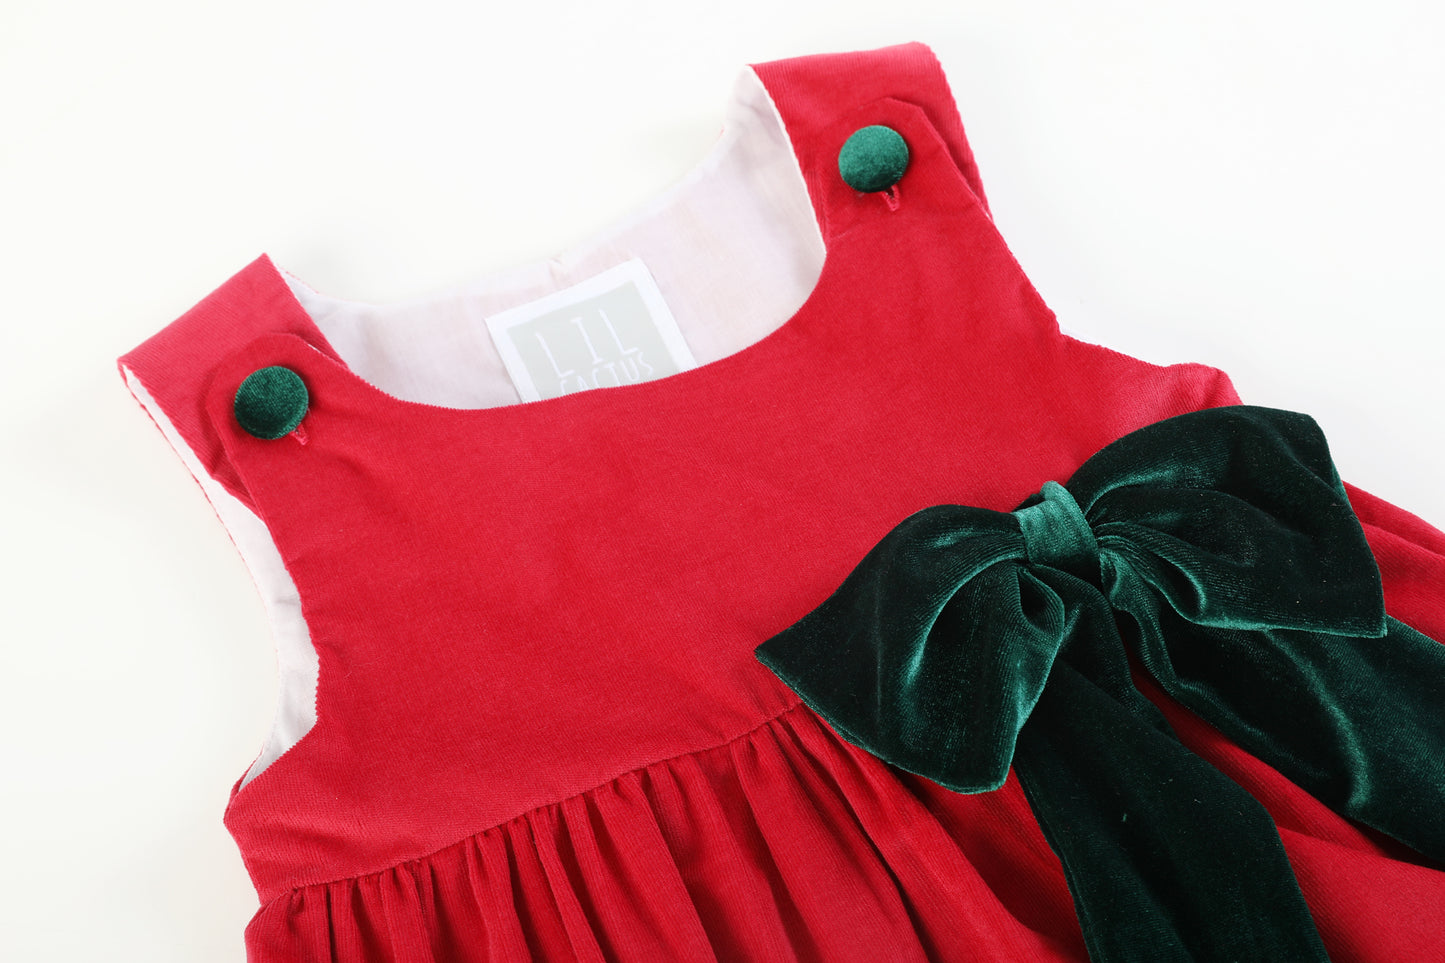 Red Corduroy Christmas Applique Big Bow Dress